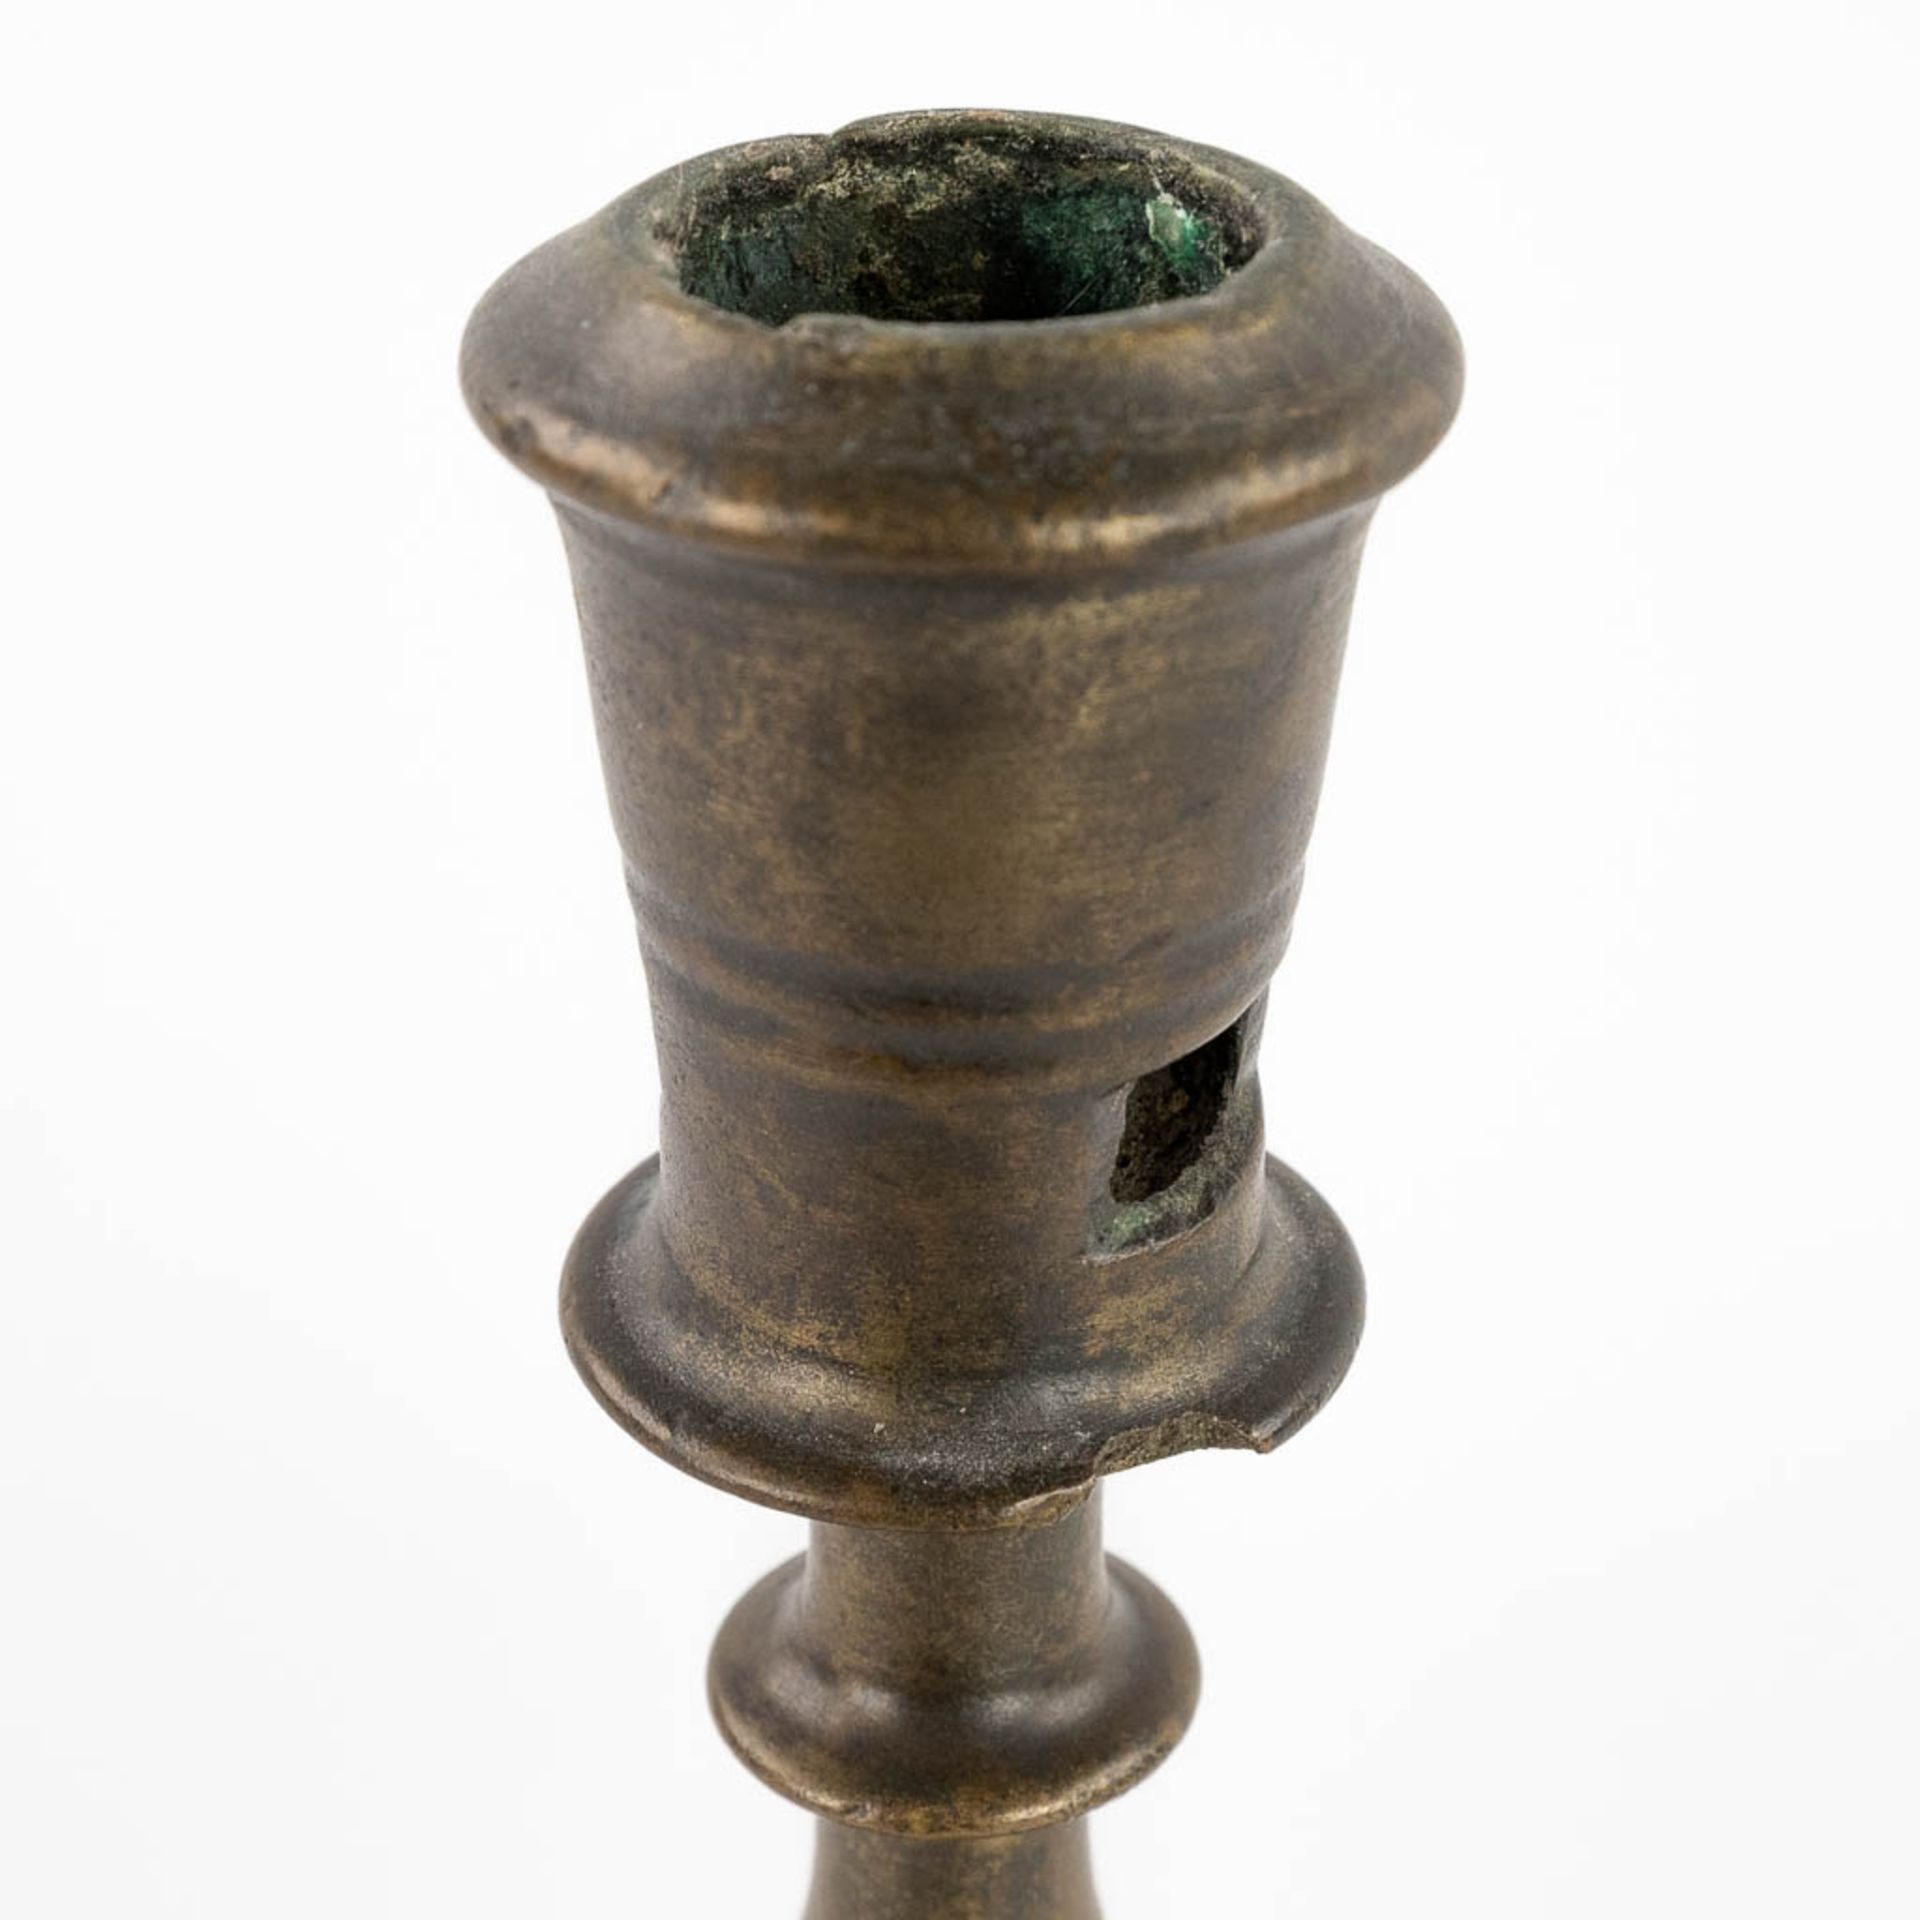 An antique Flemish or Dutch Button candlestick, bronze, 17th C (H:25 x D:13,3 cm) - Image 8 of 9